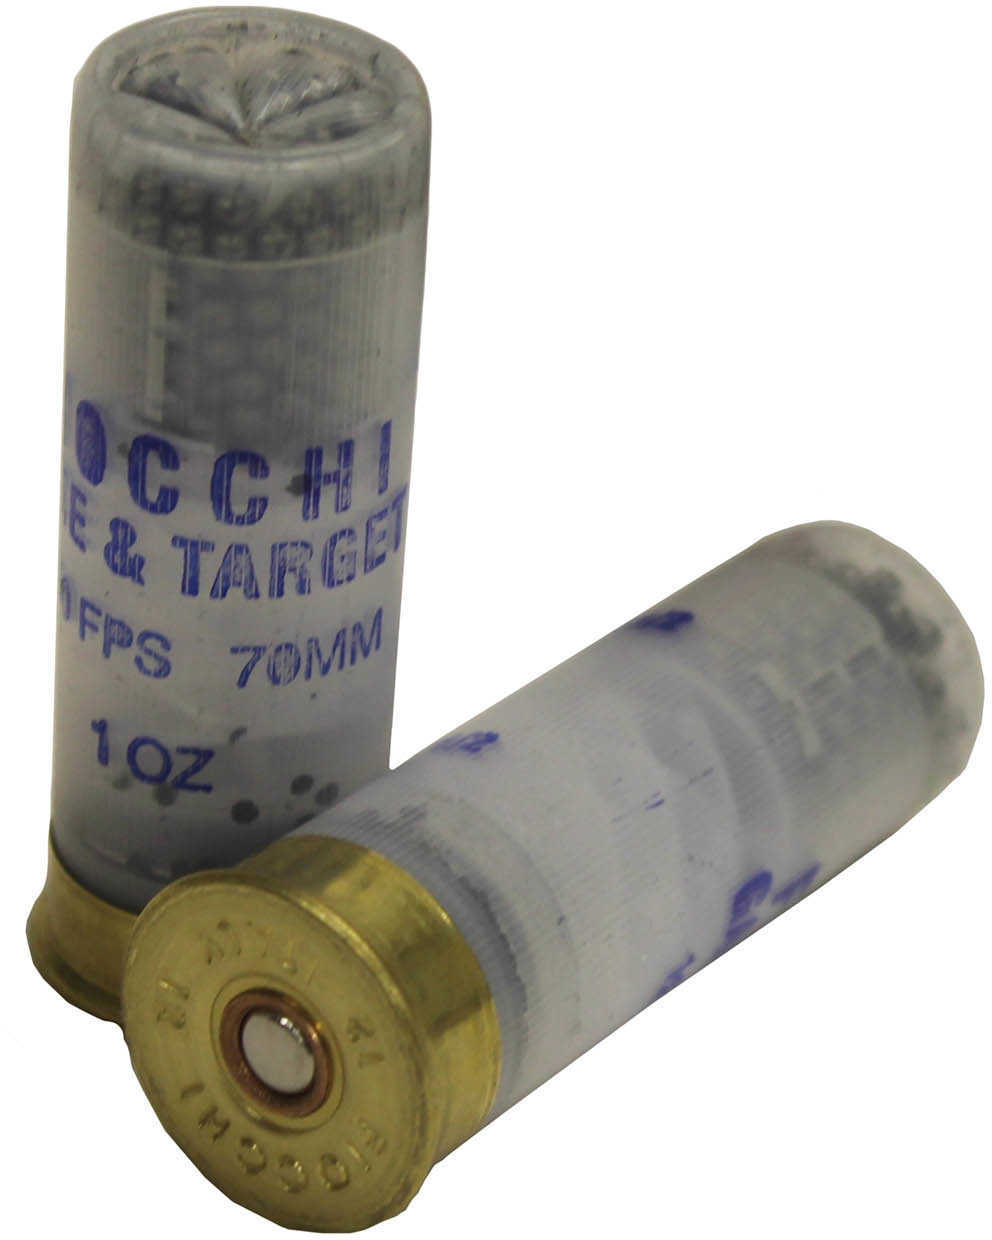 12 Gauge 25 Rounds Ammunition Fiocchi Ammo 2 3/4" 1 oz Lead #7.5